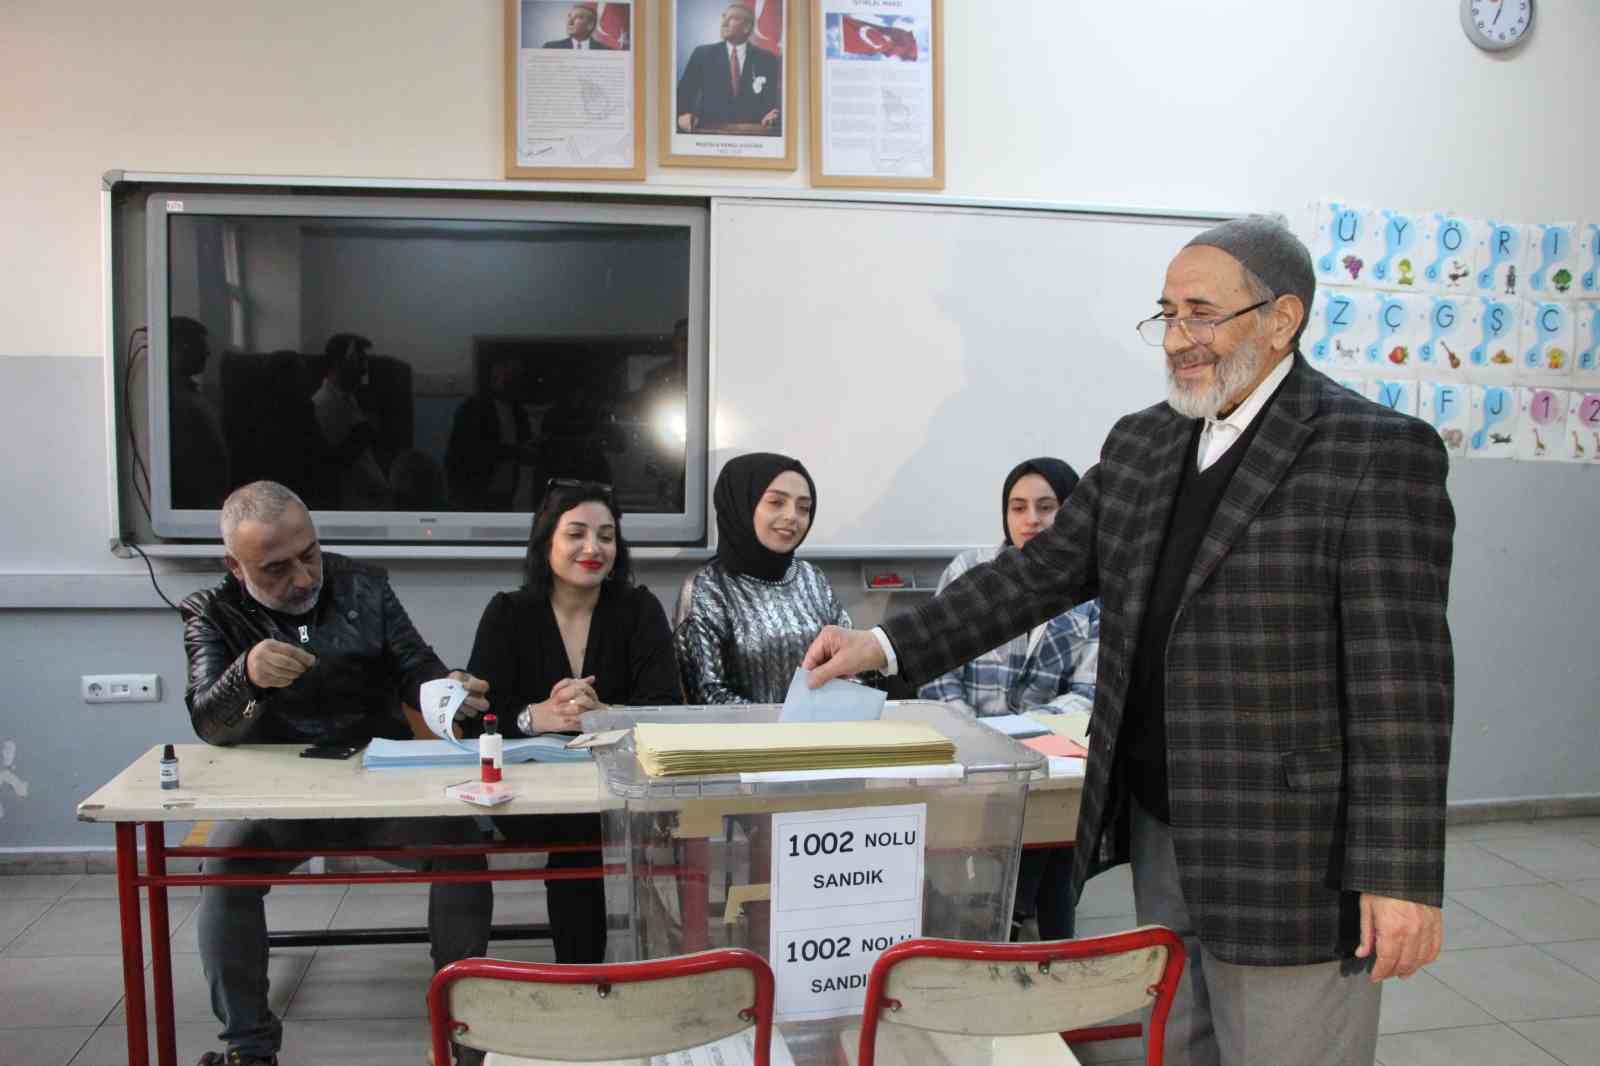 Bingöl’de oy kullanma işlemi başladı